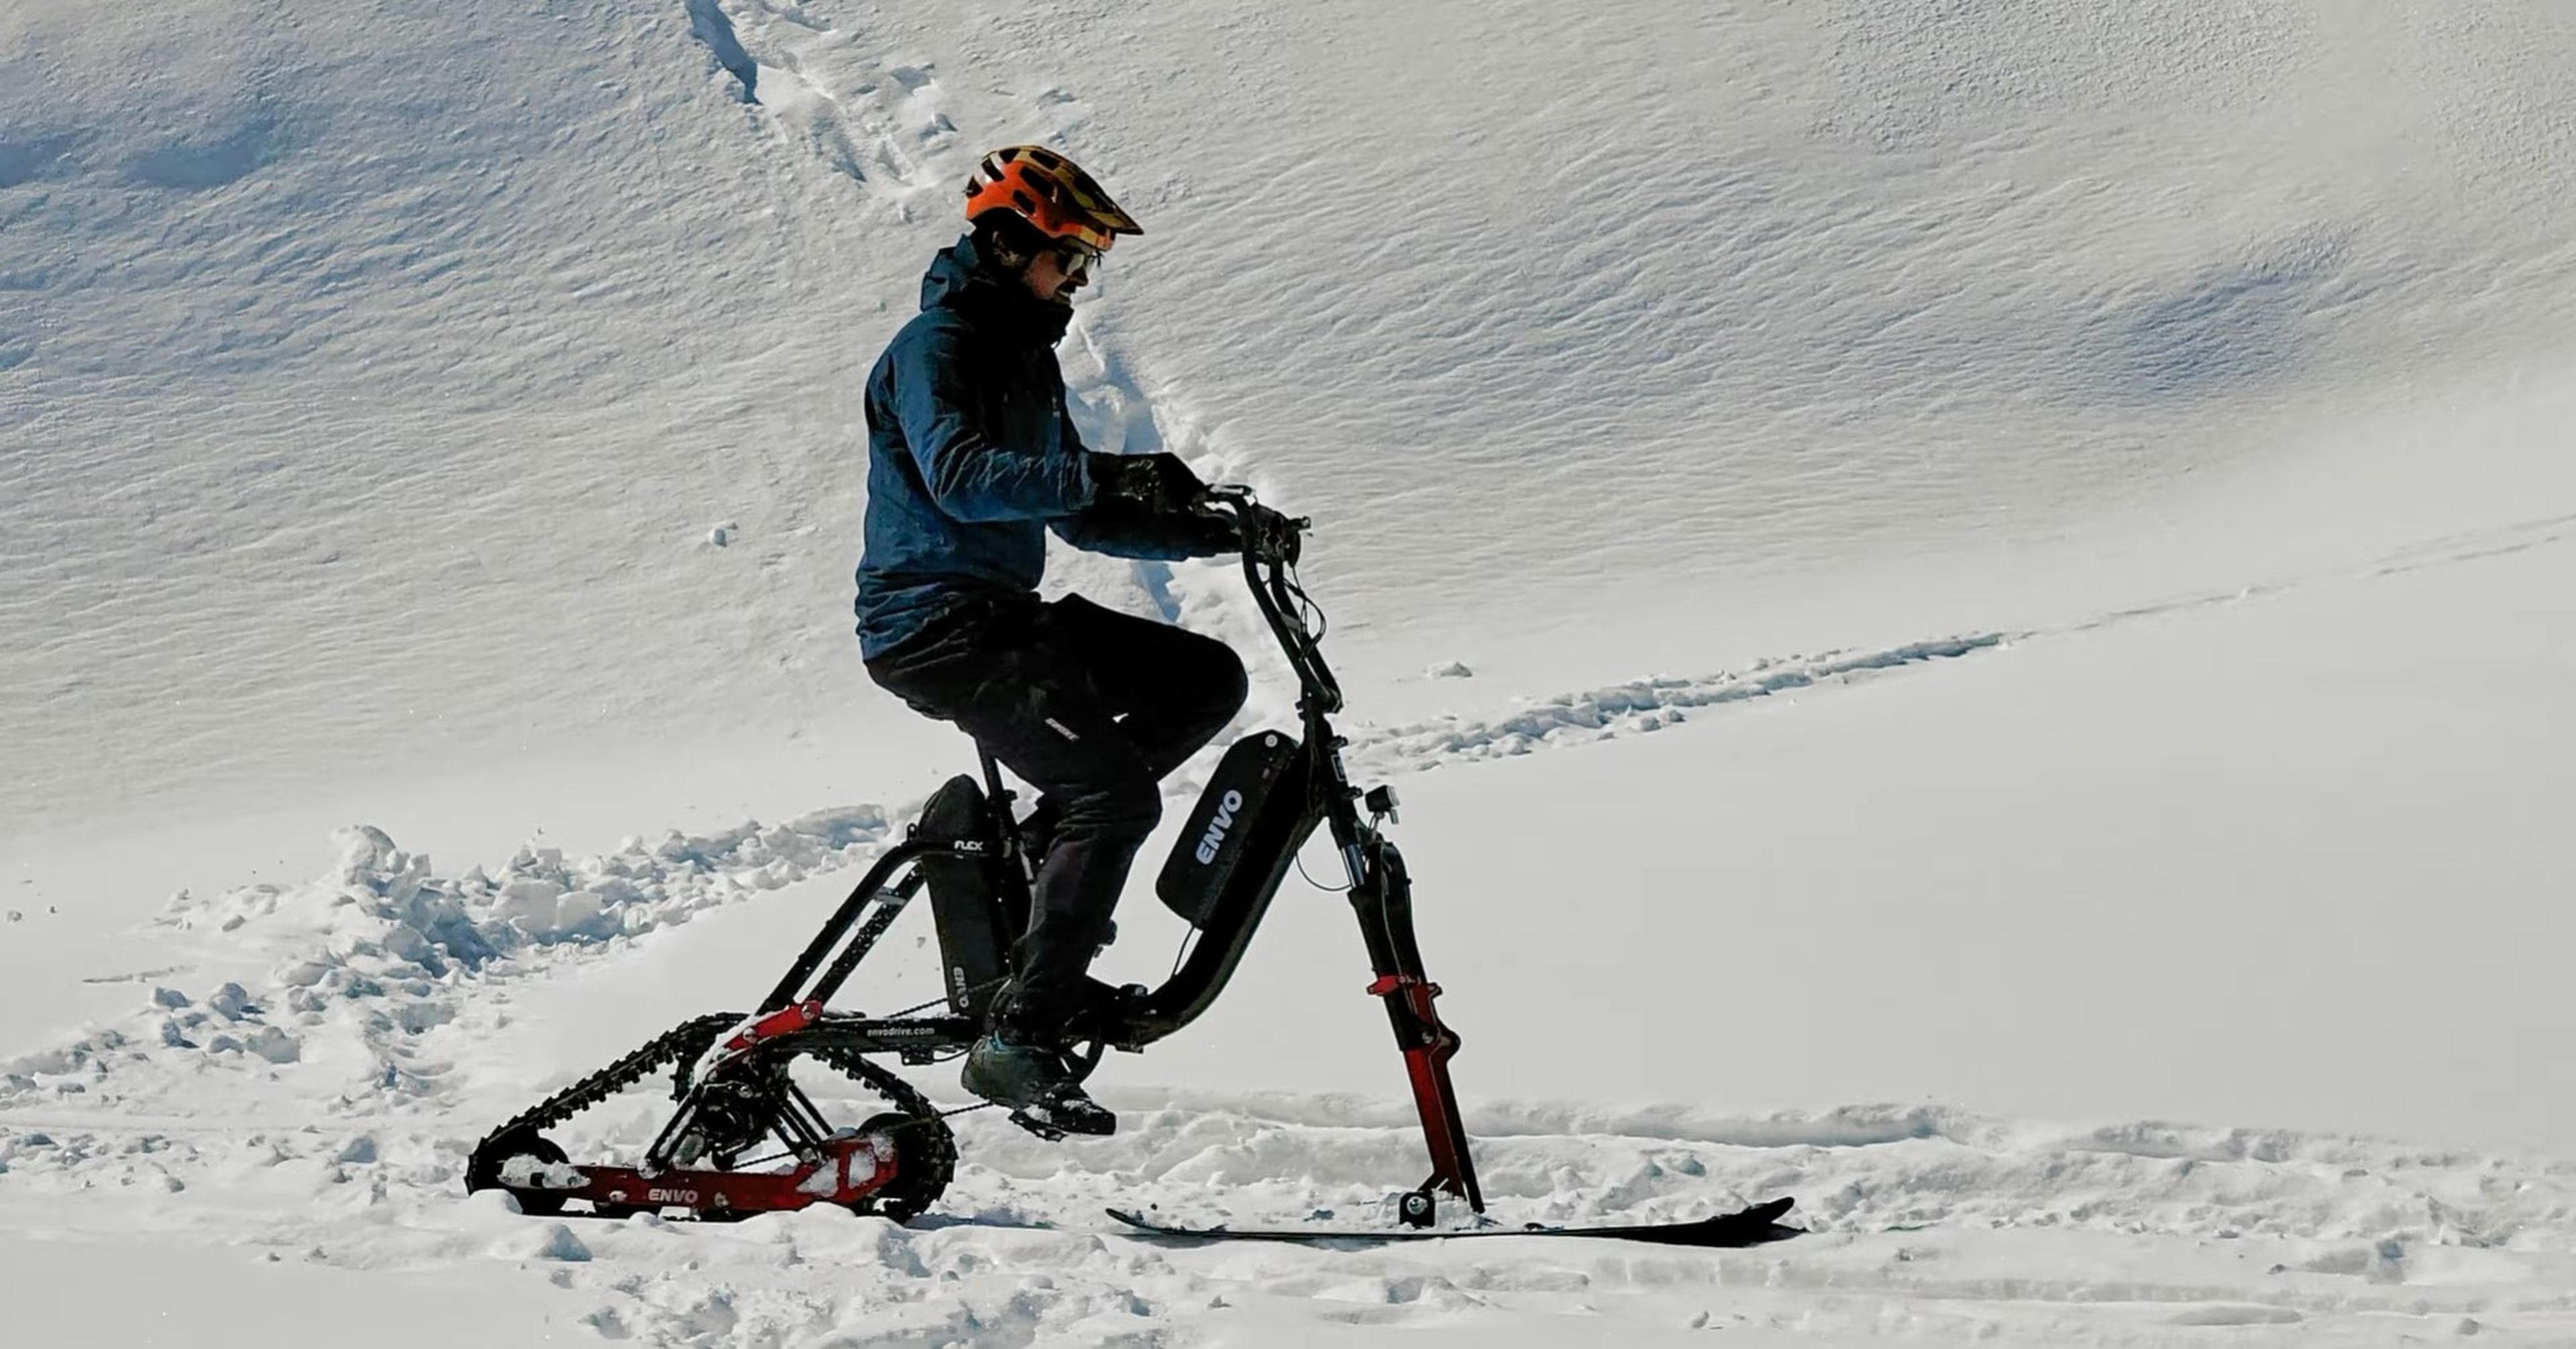 La bici eléctrica para montañas nevadas, versión lite de una moto de nieve